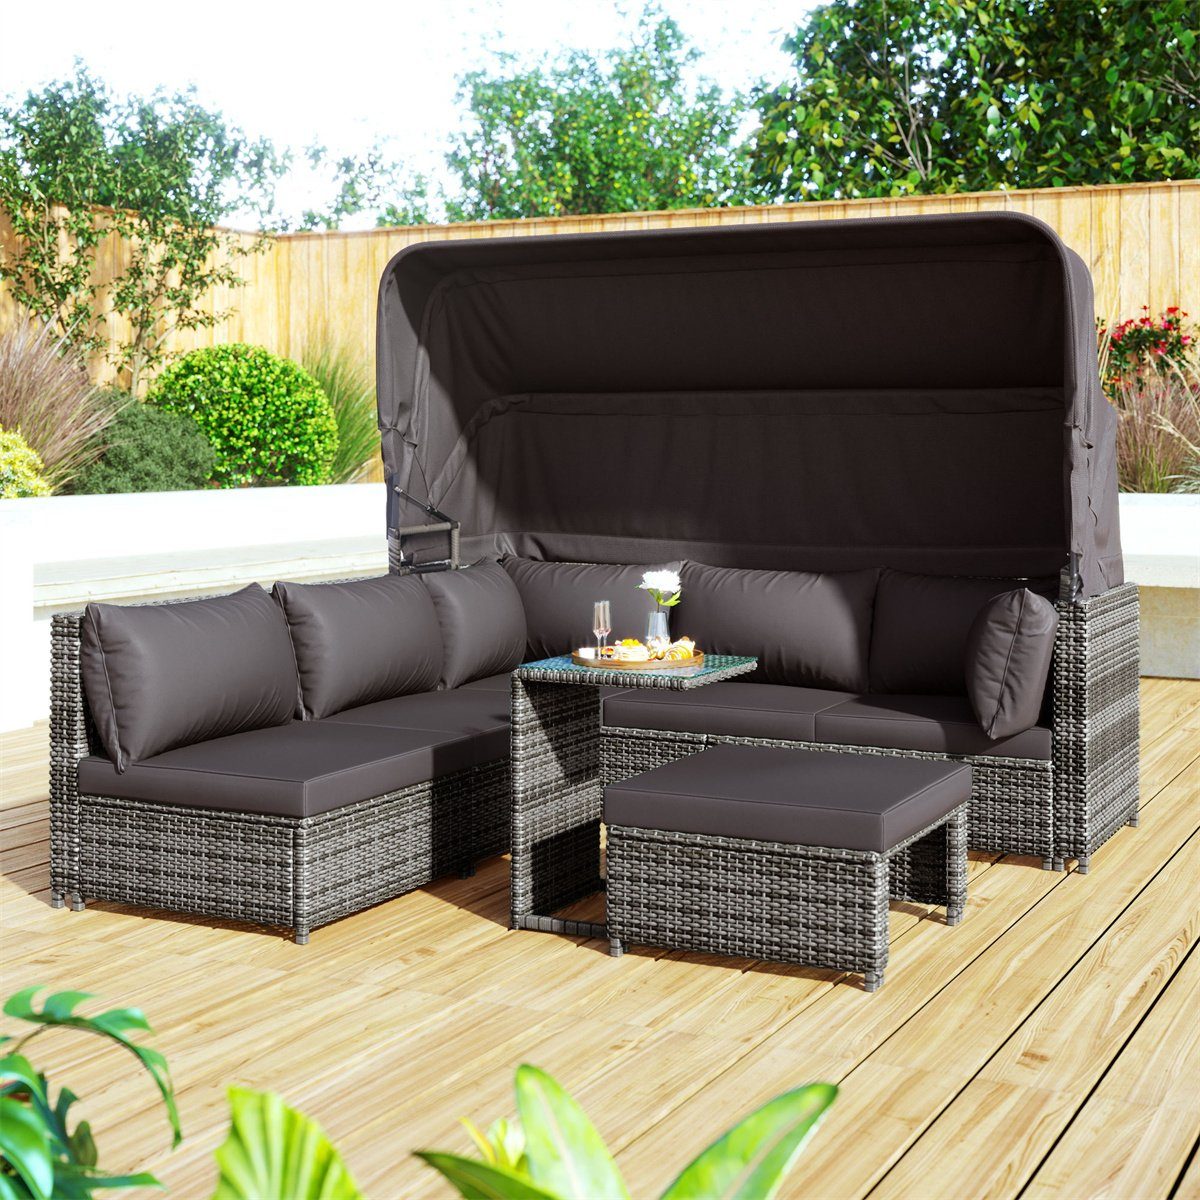 autolock Gartenlounge-Set Rattan Sitzgruppe,Polyrattan Gartenmöbel,Polyrattan Lounge sofa, Outdoor Gartenmöbel mit Sonnendach,Hocker,Sesseln und Tisch